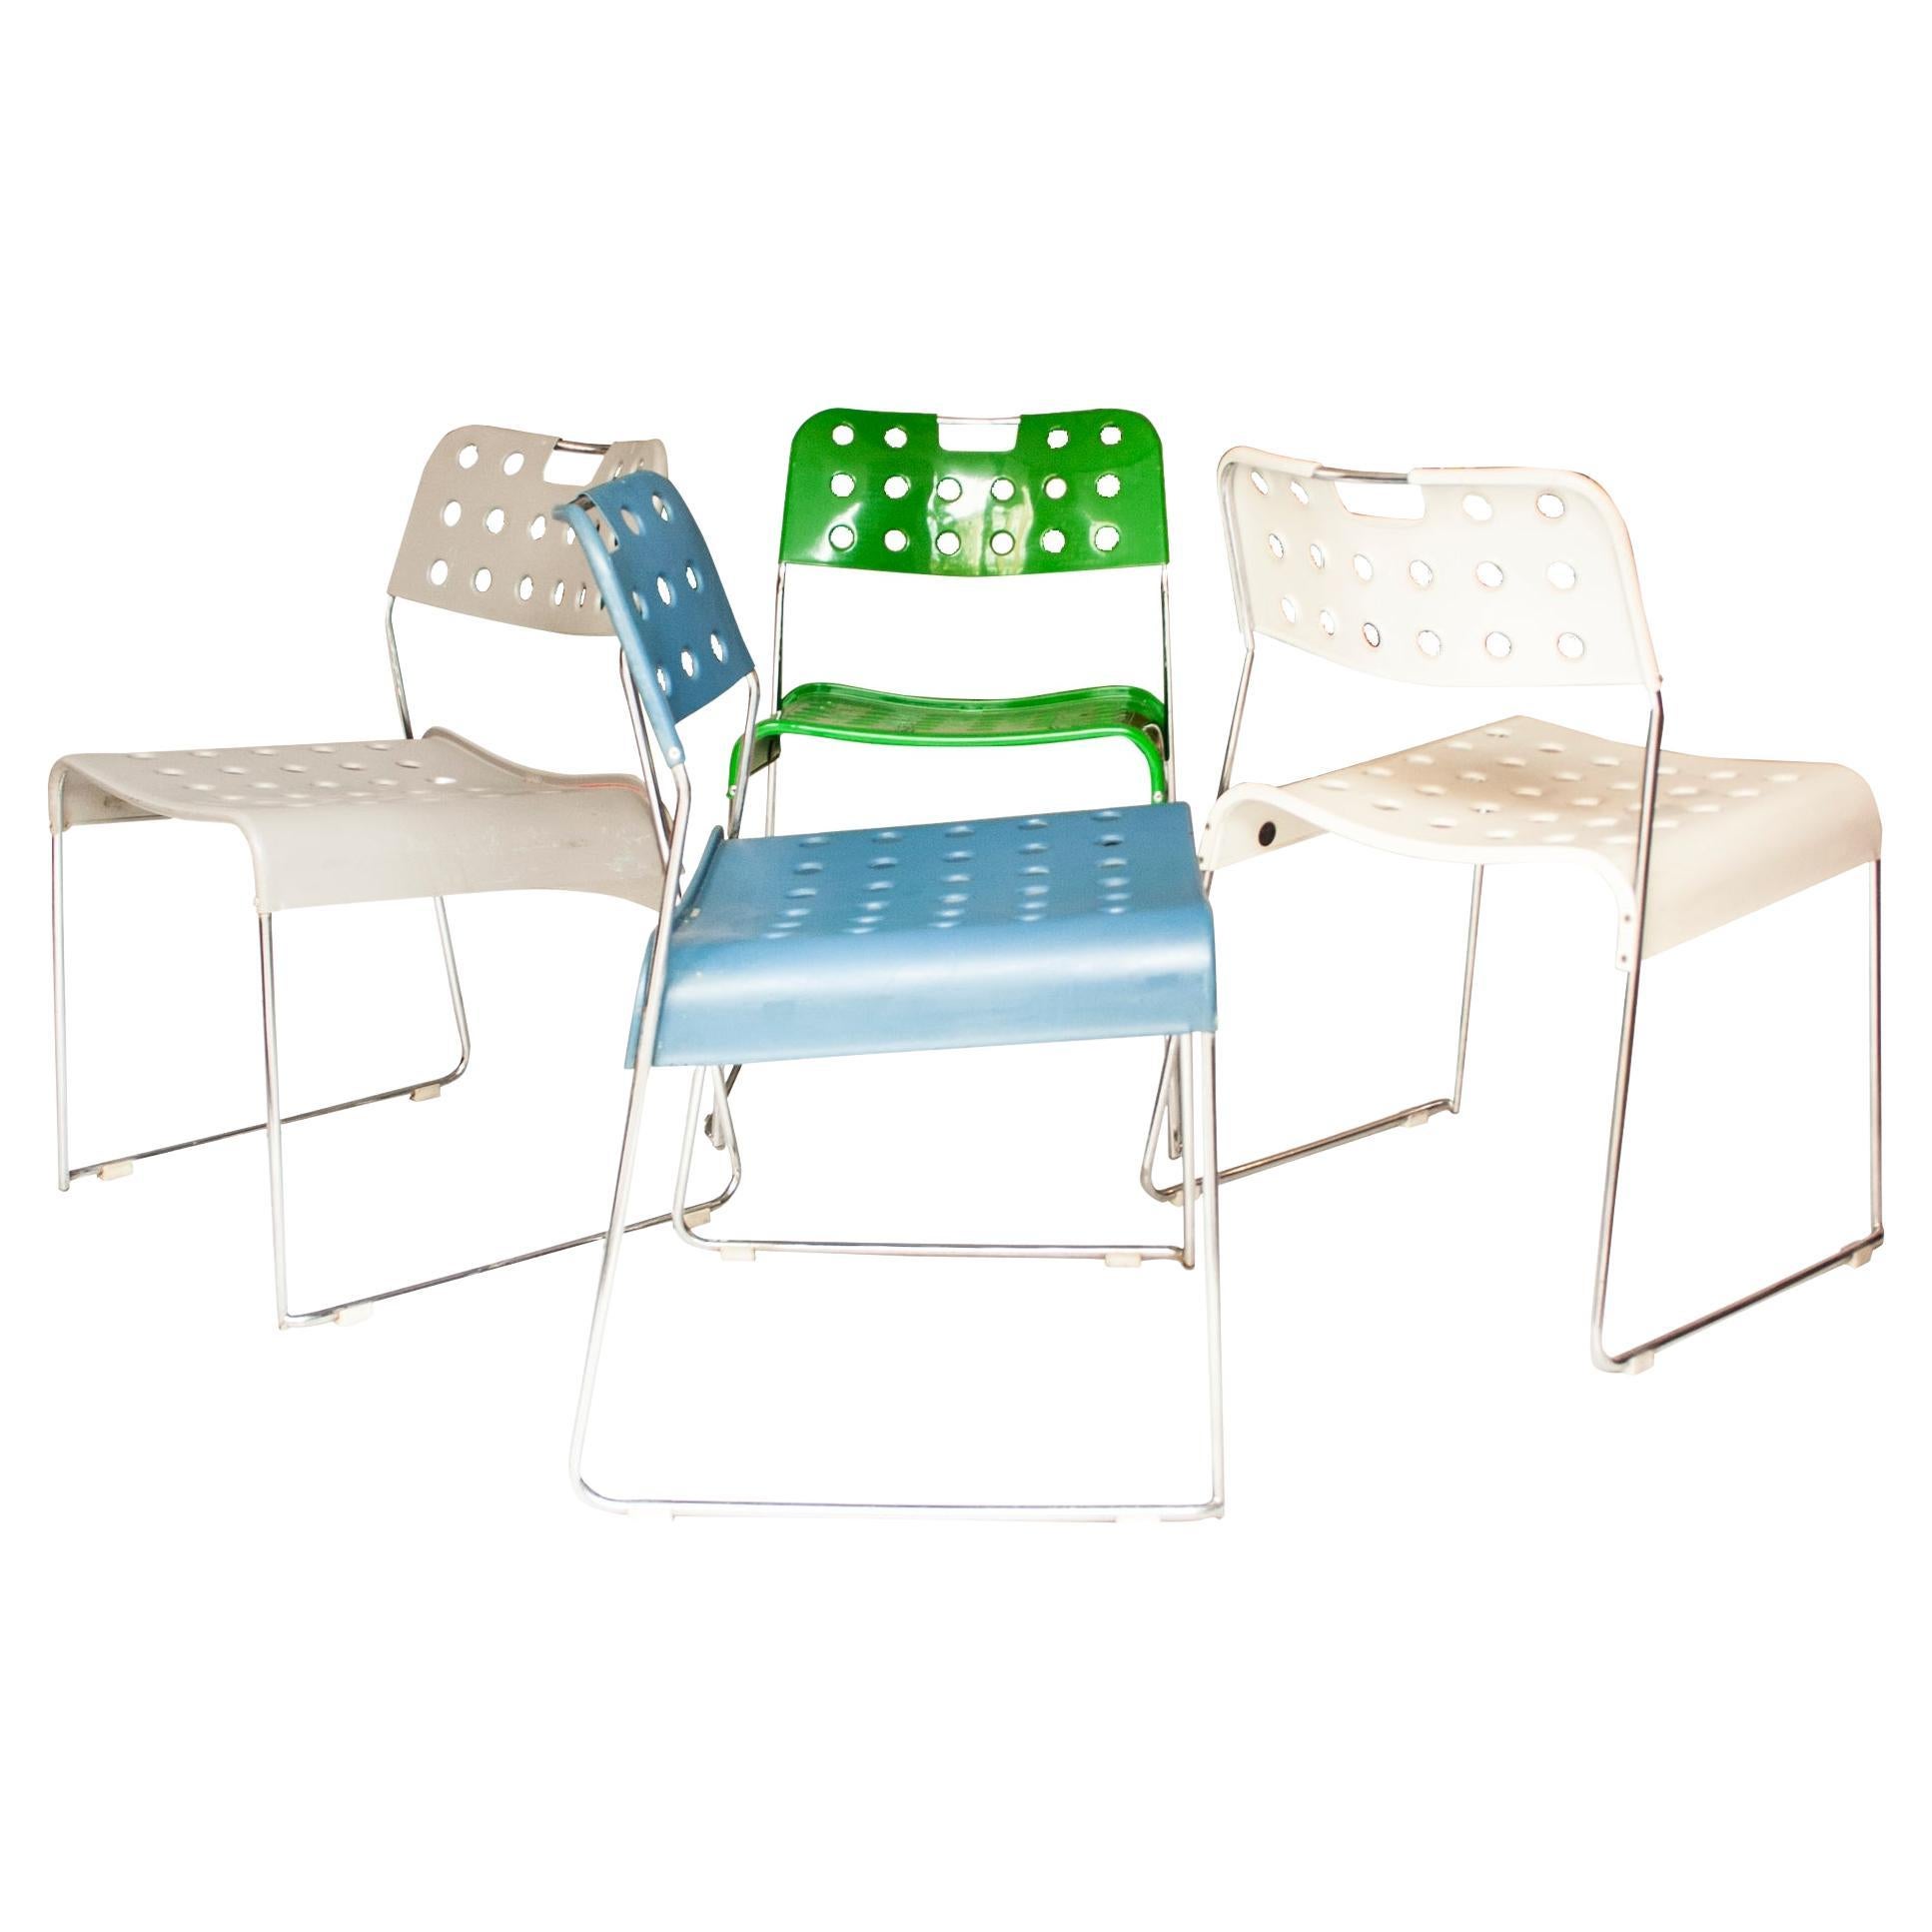 Set of Omkstak Chair by Rodney Kinsman for Bieffeplast, 1970, Italy